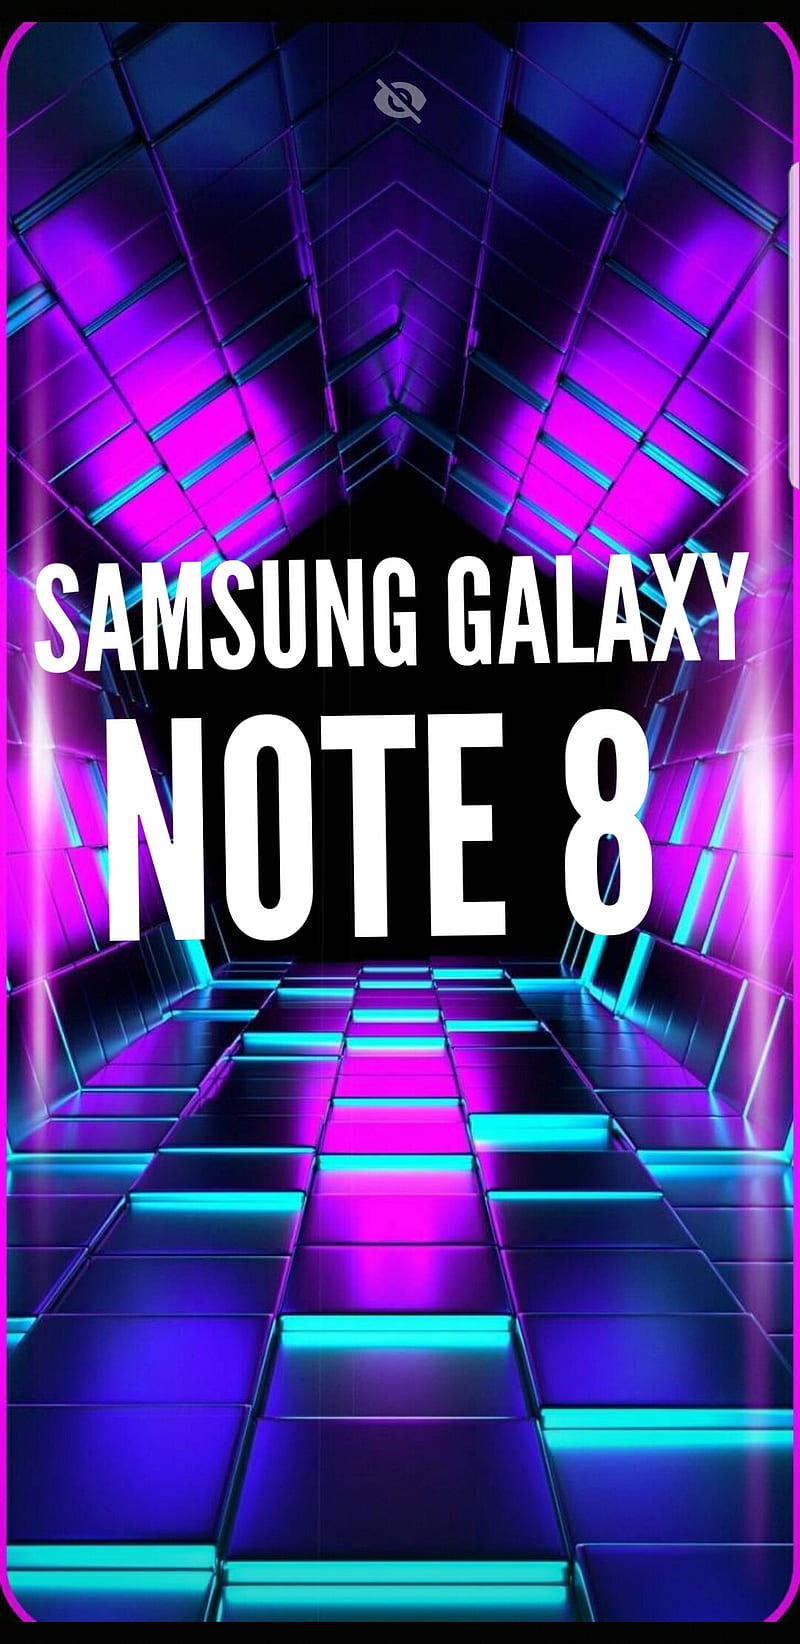 Hình nền điện thoại Galaxy Note 8 neon với những tông màu sặc sỡ, nổi bật giúp tô điểm cho màn hình điện thoại của bạn trở nên độc đáo và nổi bật hơn.